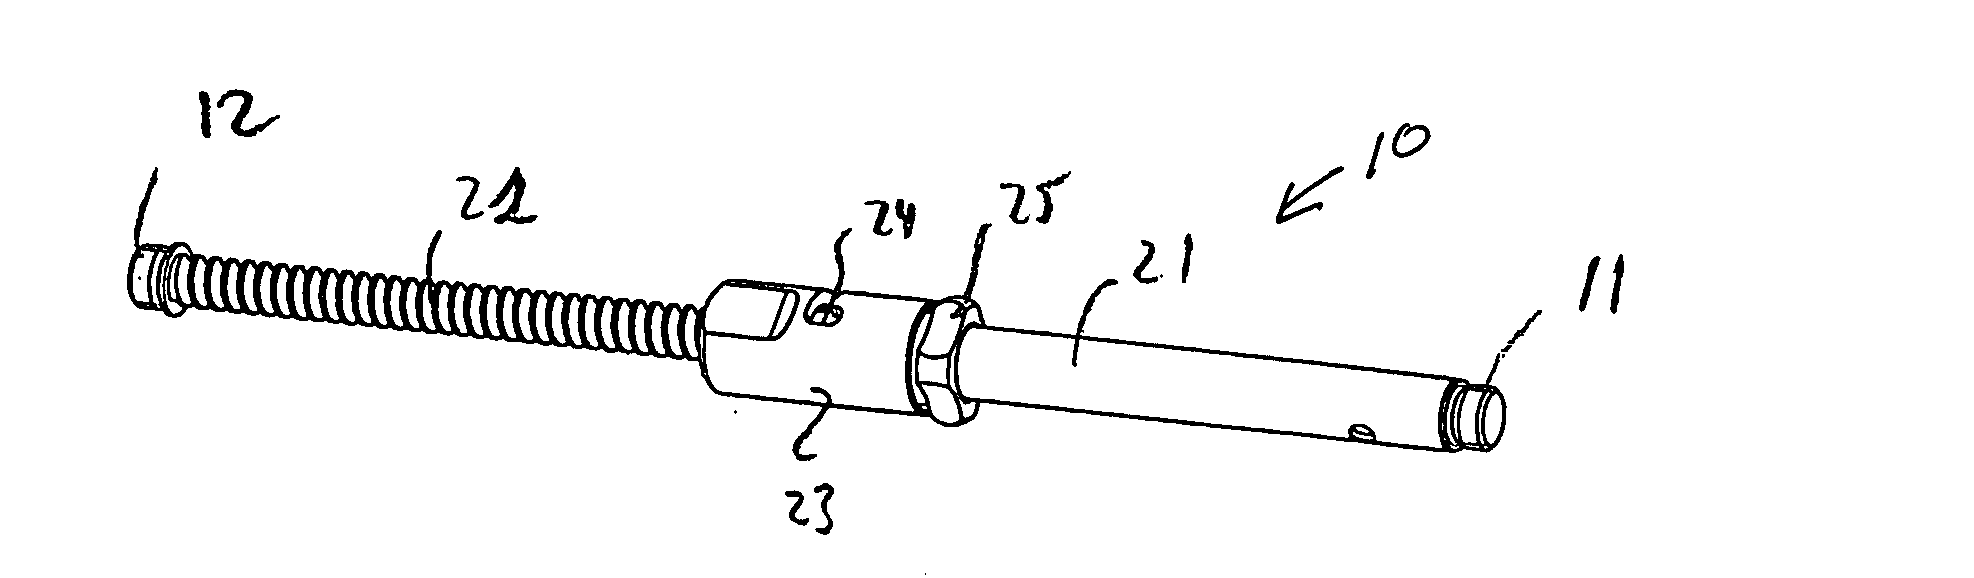 Telescopic strut for an external fixator